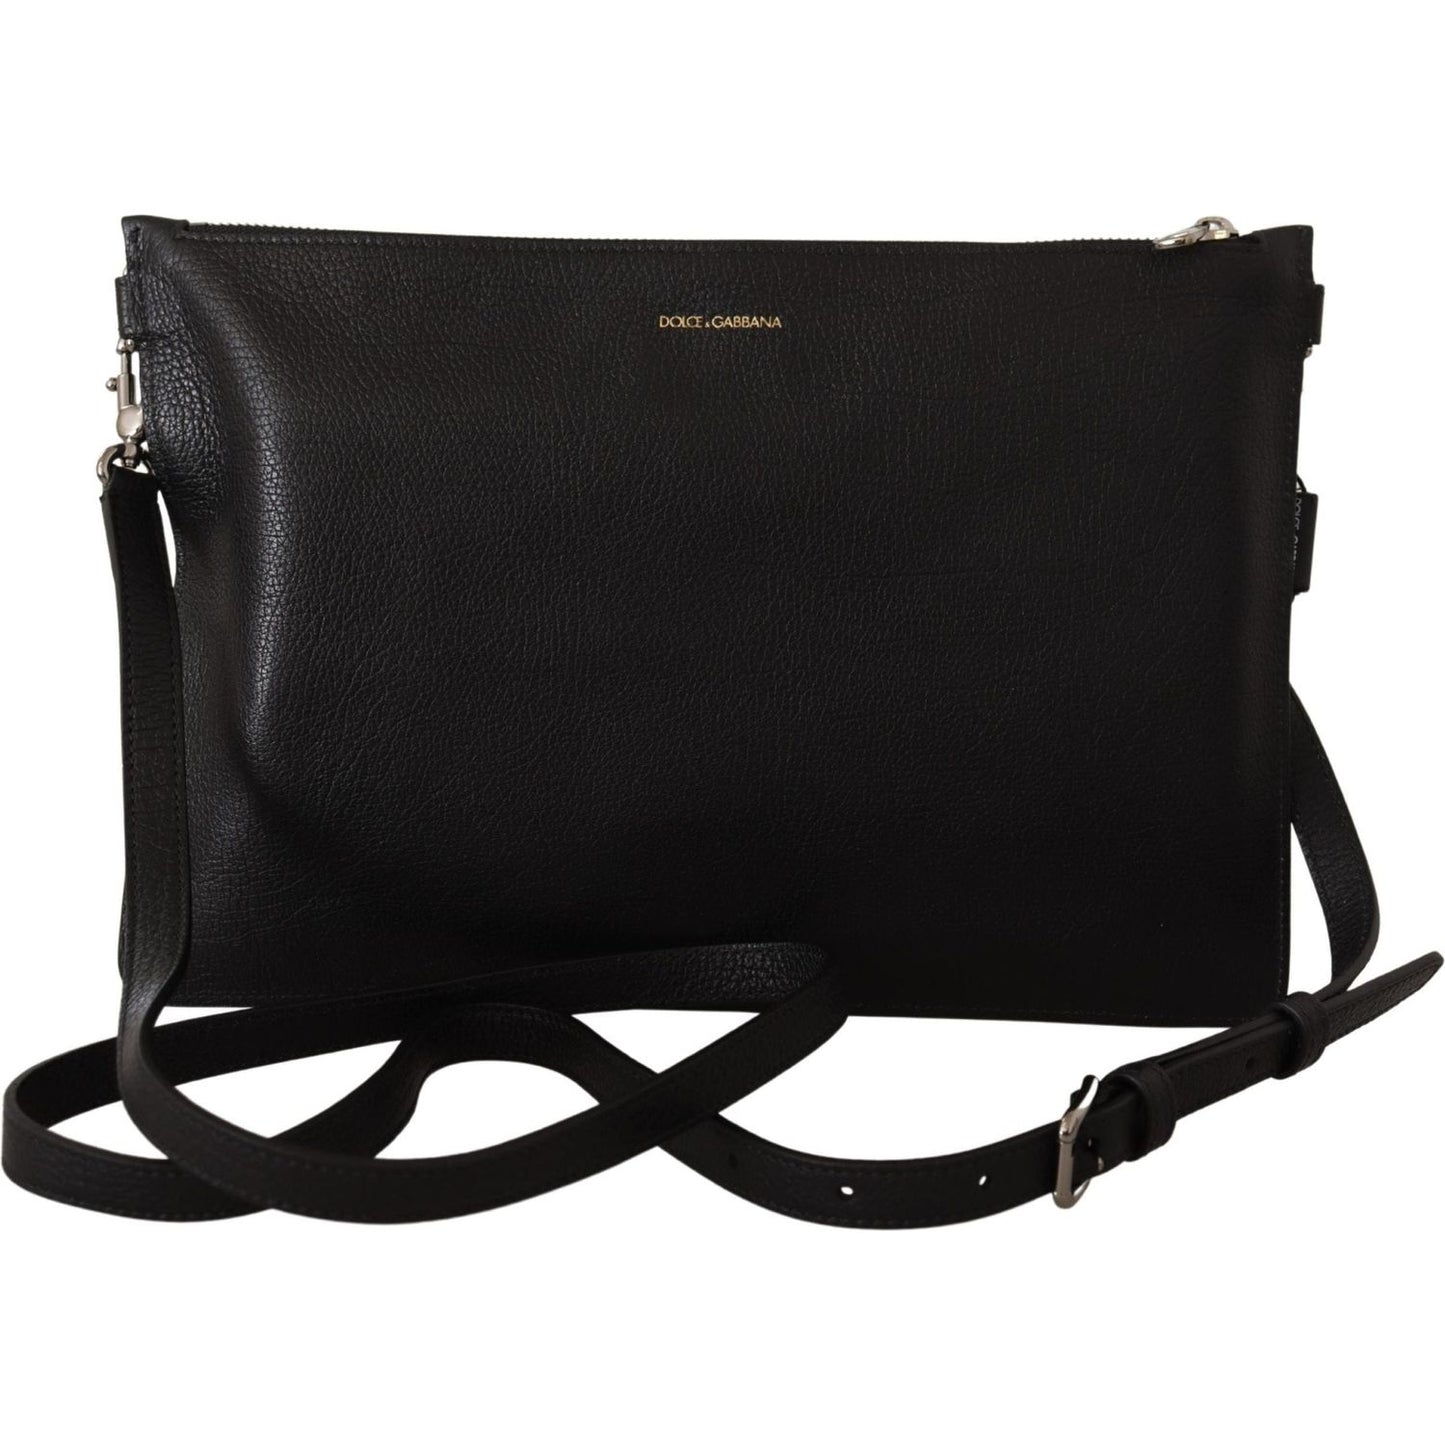 Dolce & Gabbana | Black Exotic Leather Shoulder Sling Alta Sartoria Bag | 1239.00 - McRichard Designer Brands